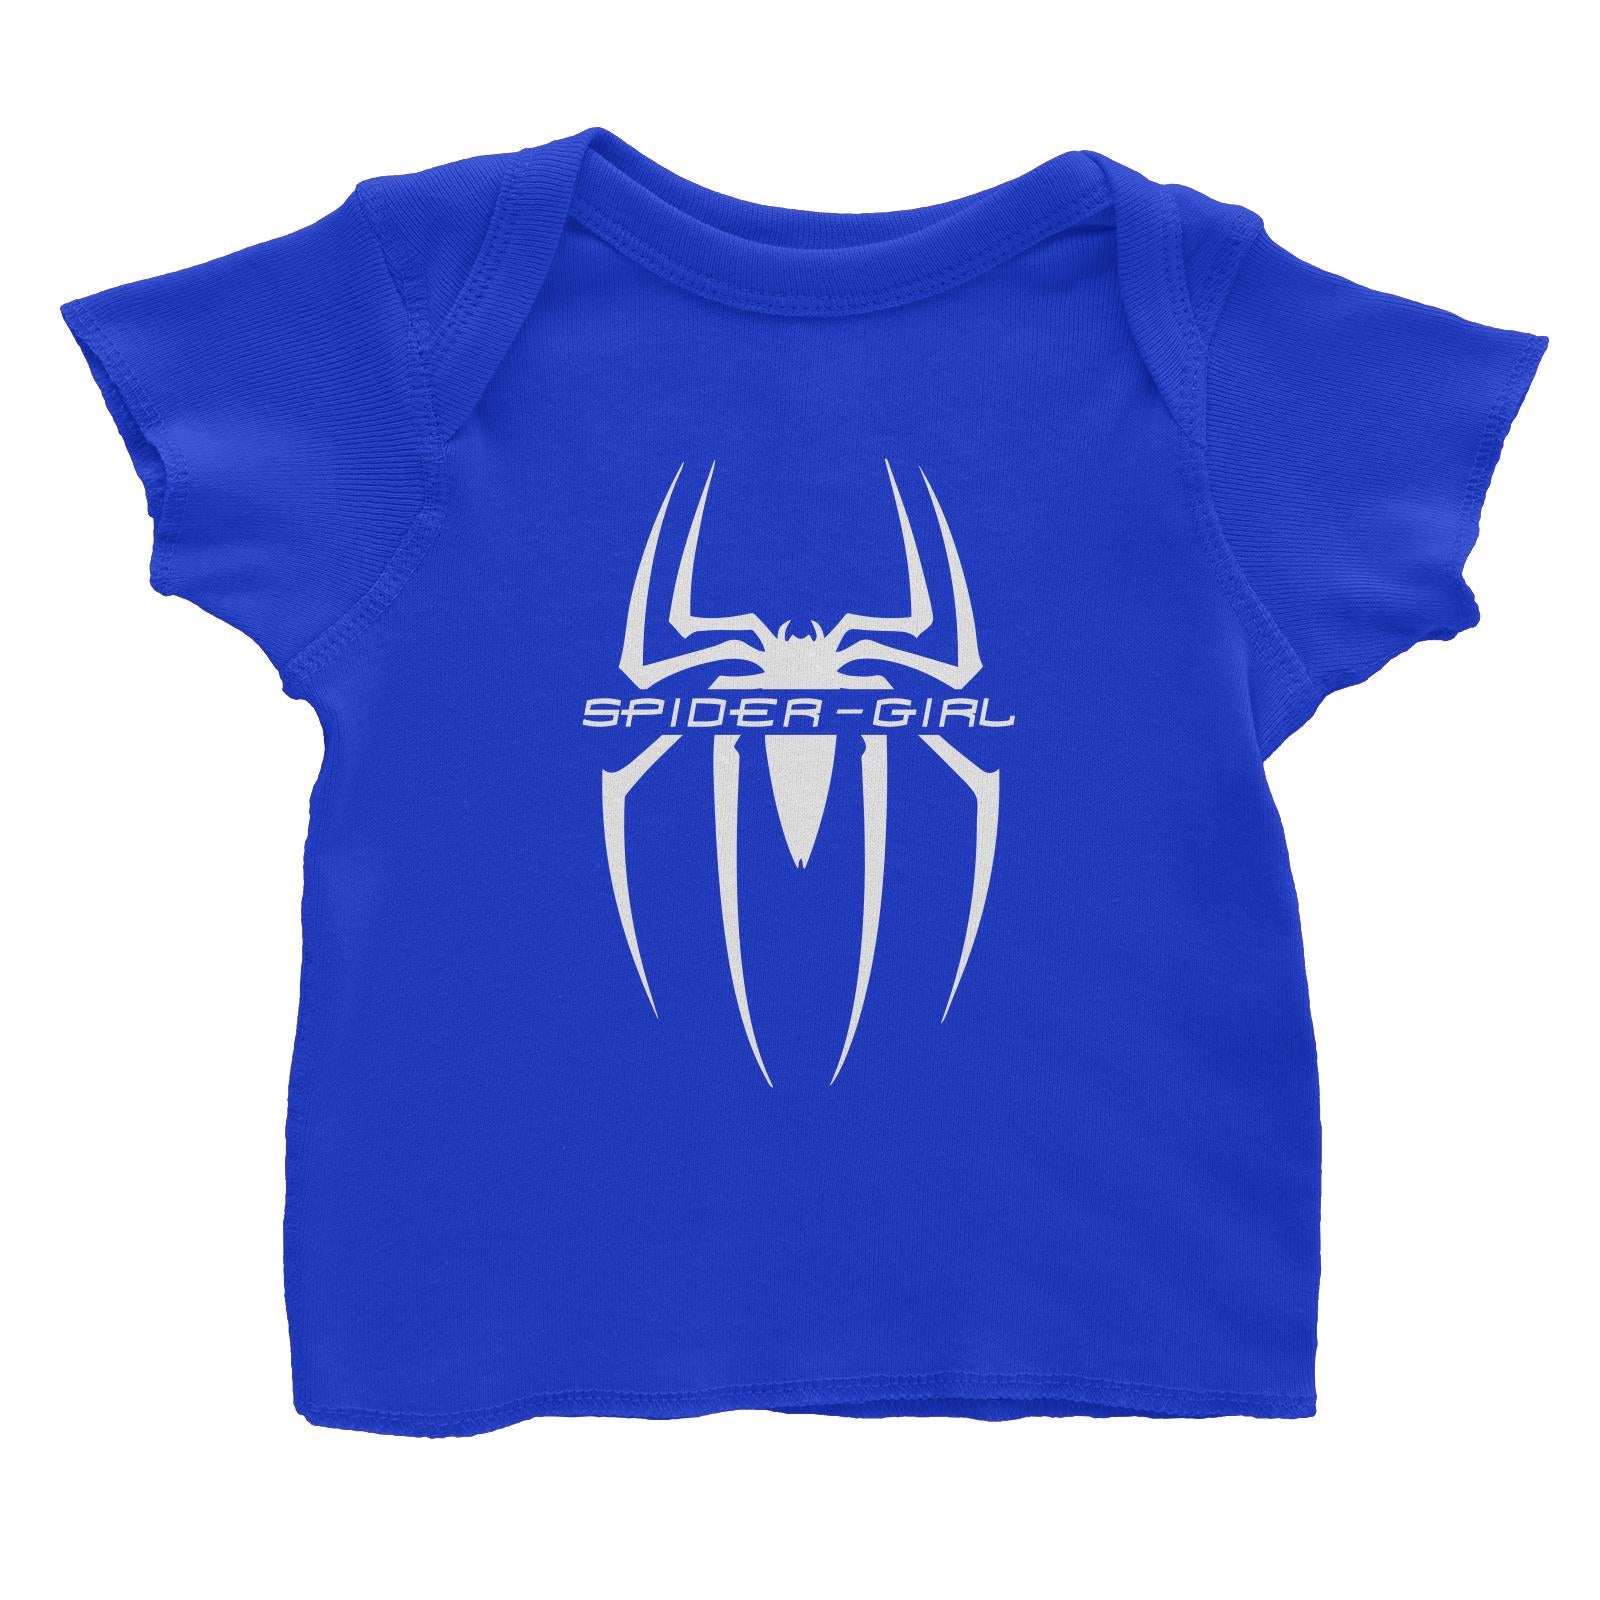 Superhero Spider Girl Baby T-Shirt  Matching Family